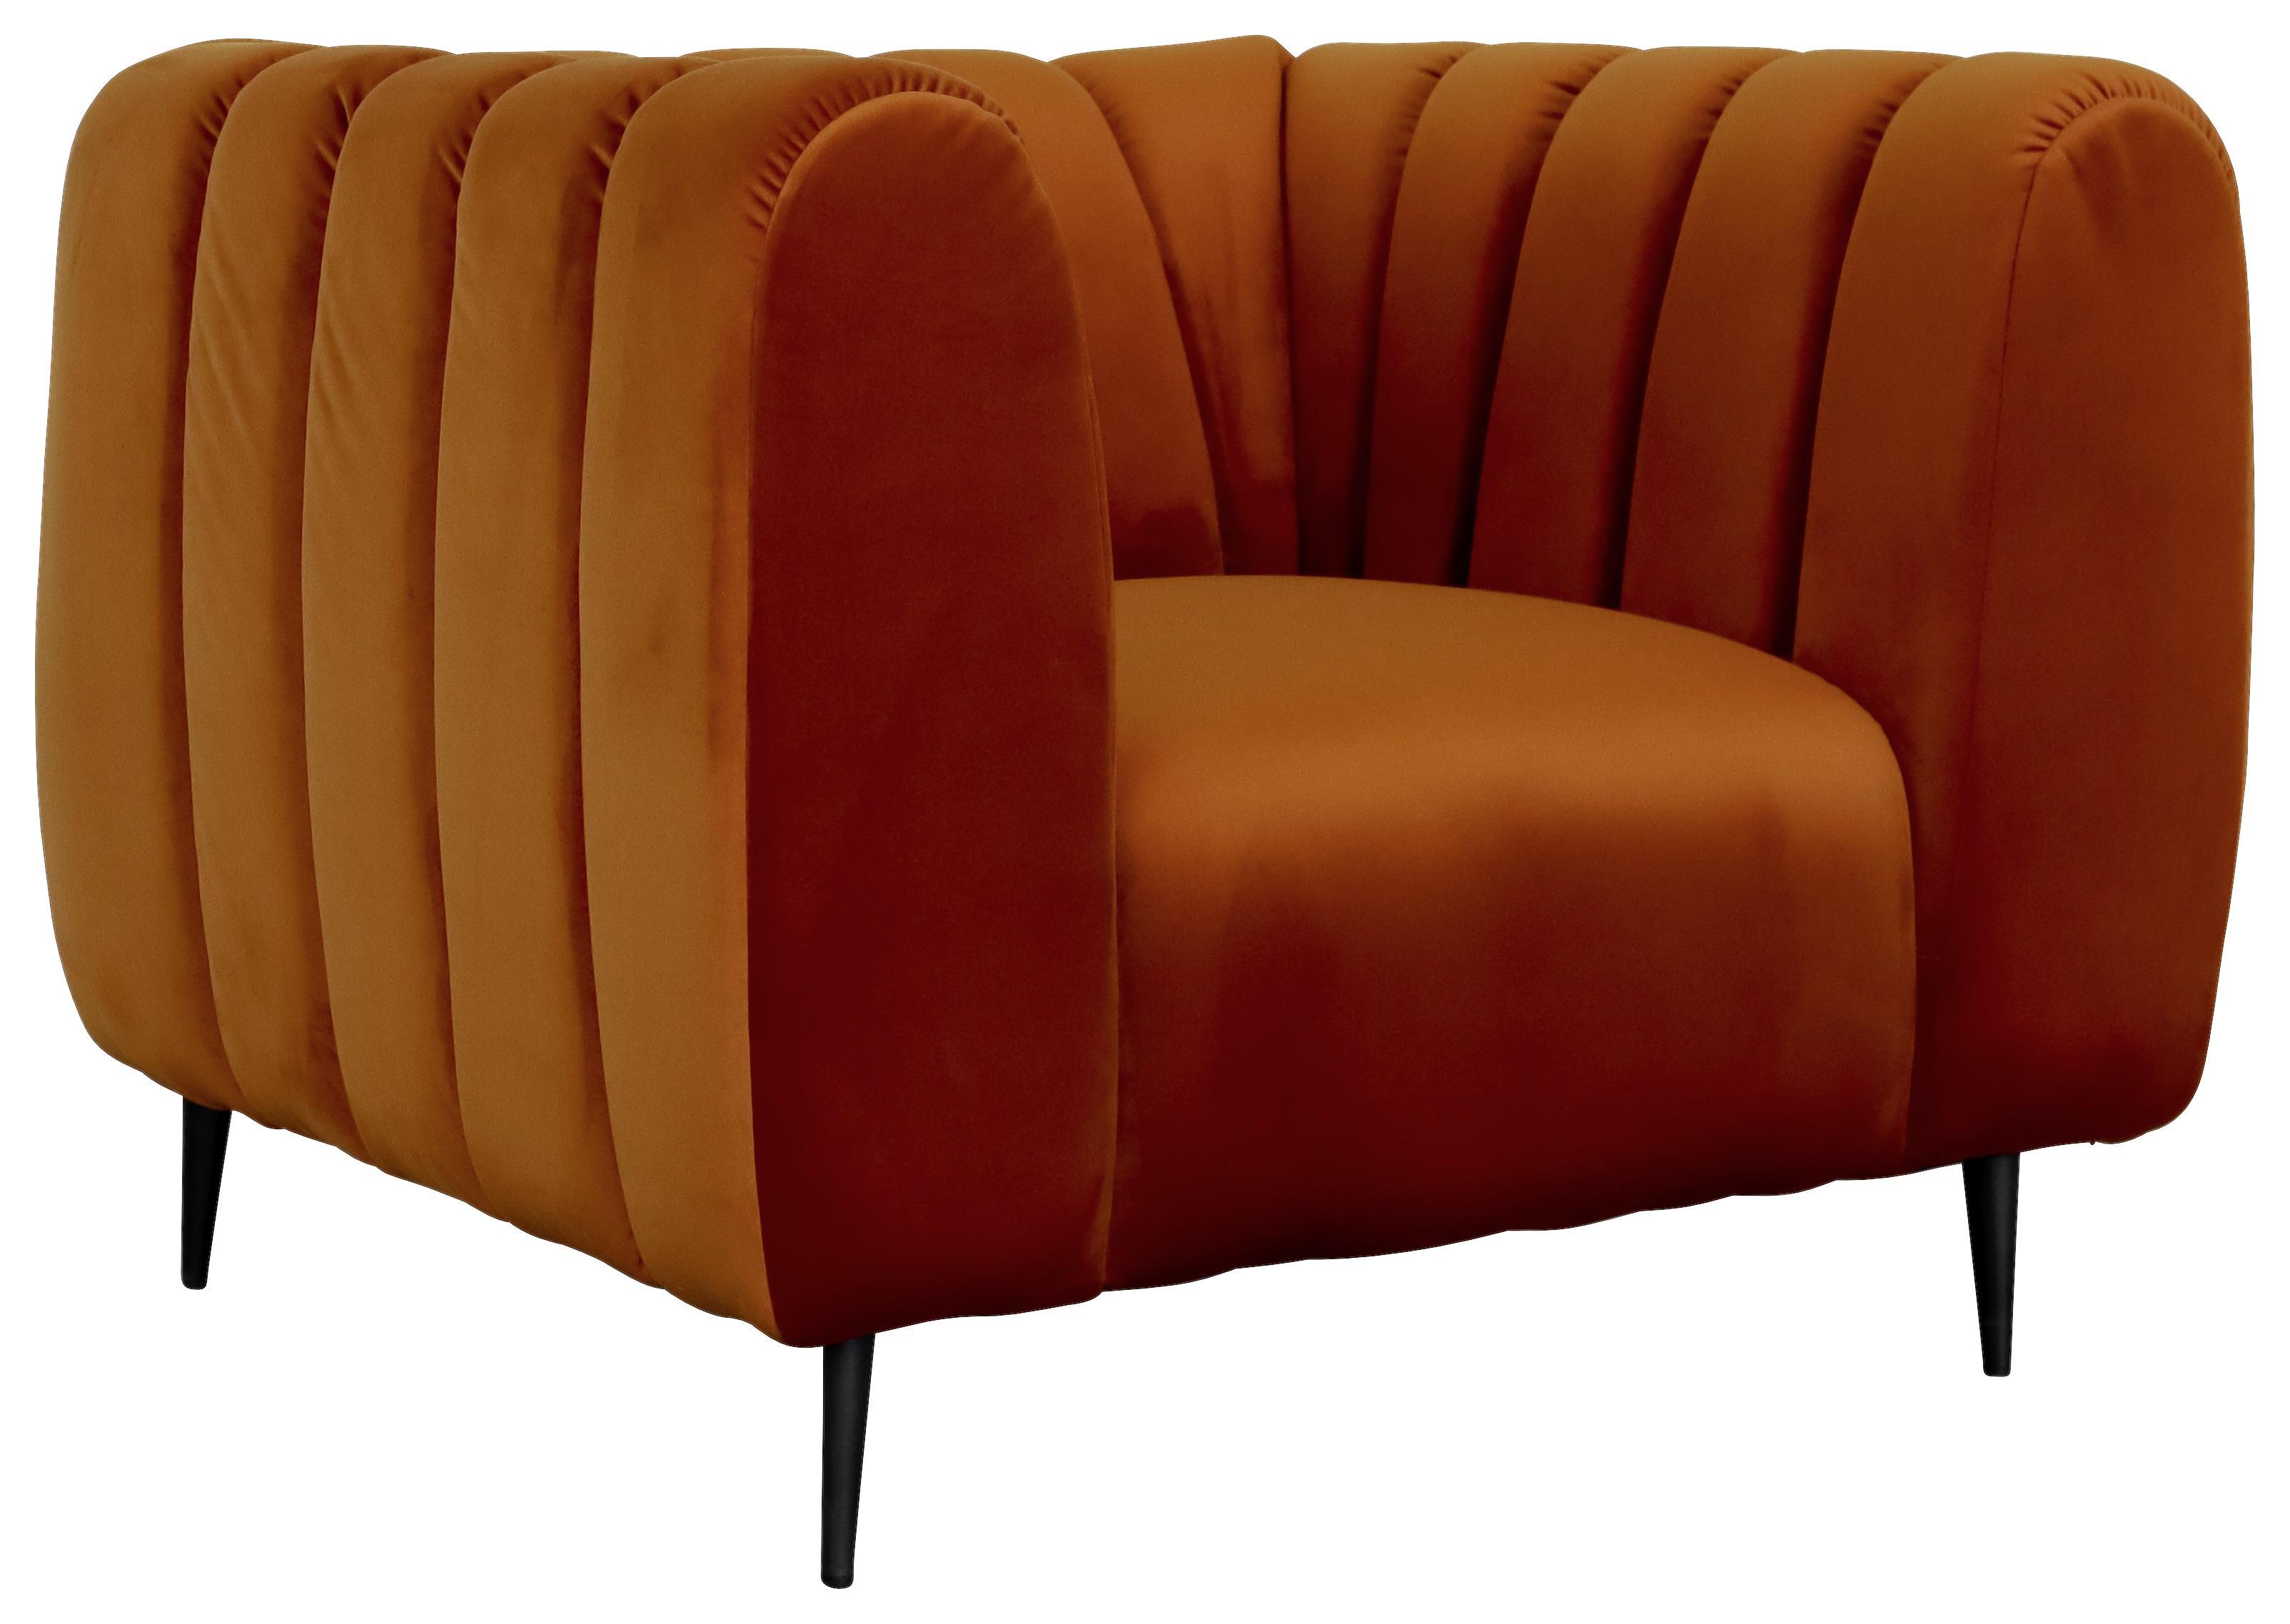 Křeslo Cloud - 1 - oranžová, Moderní, dřevo/textil (105/80/95cm)